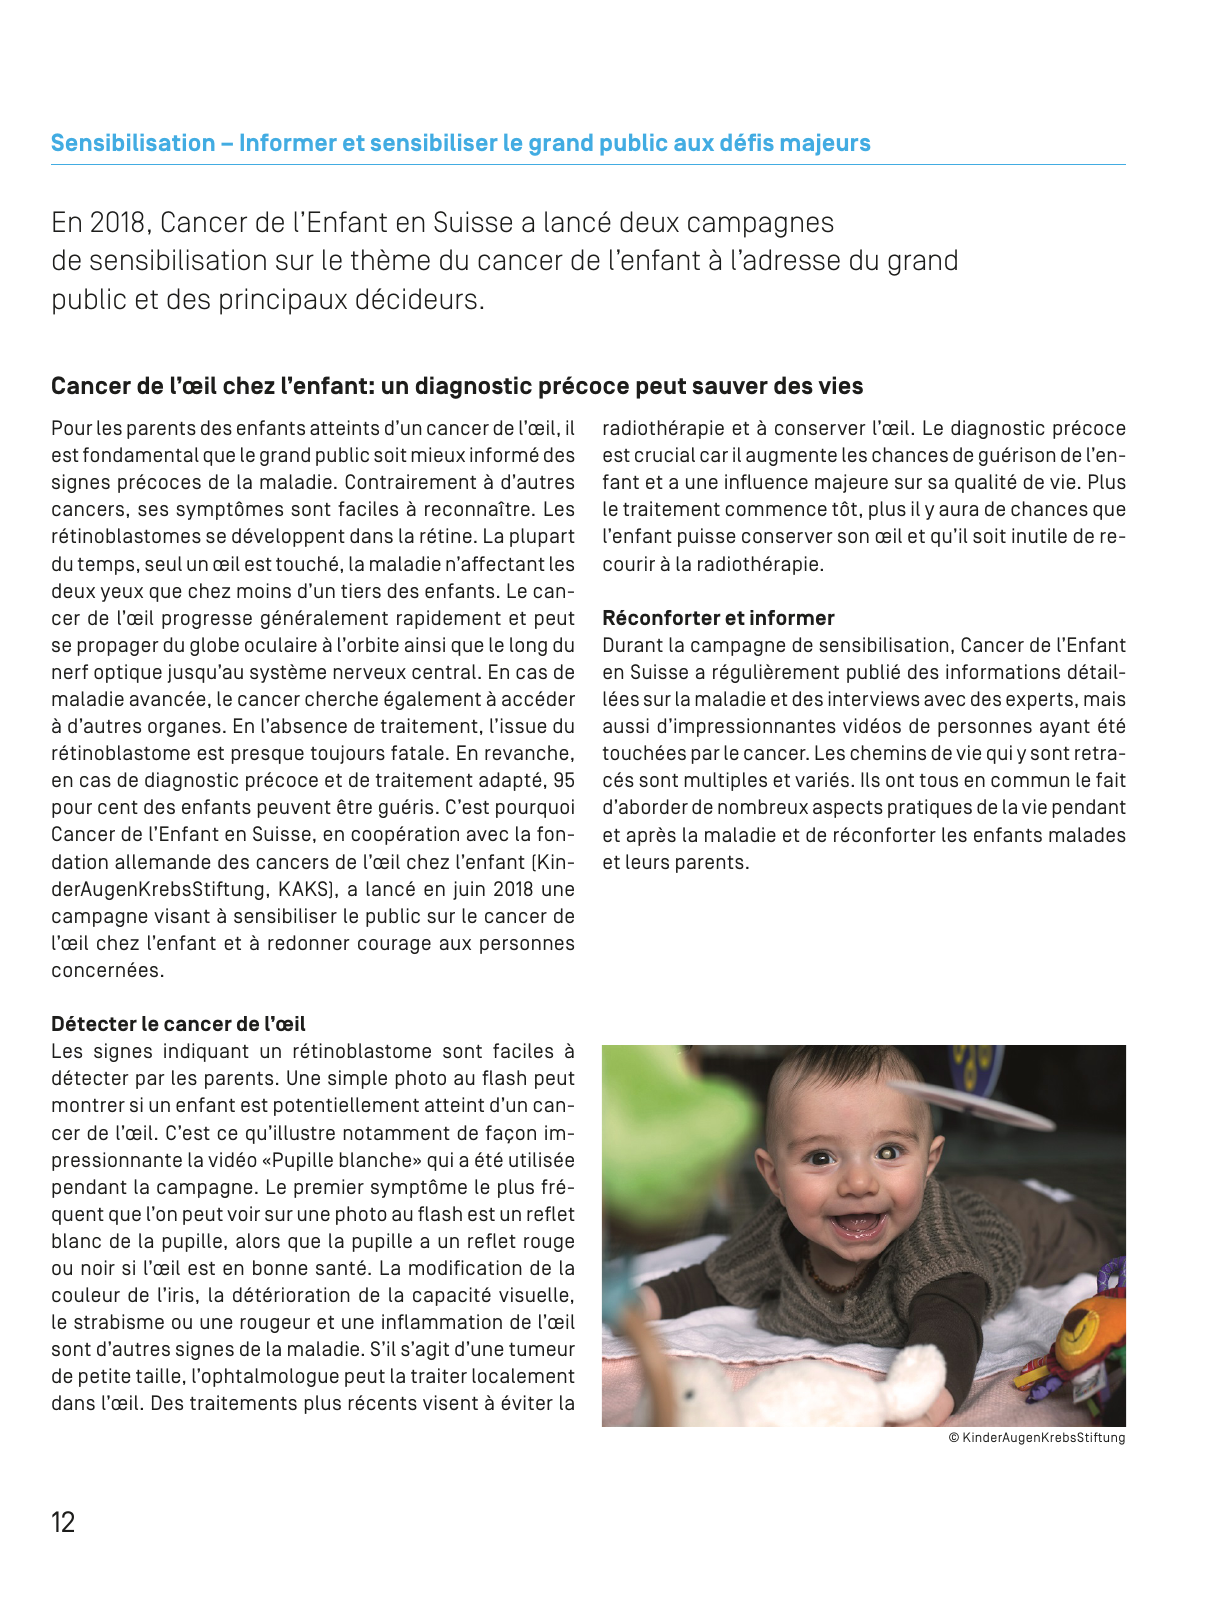 Vorschau Jahresbericht 2018_französisch Seite 12